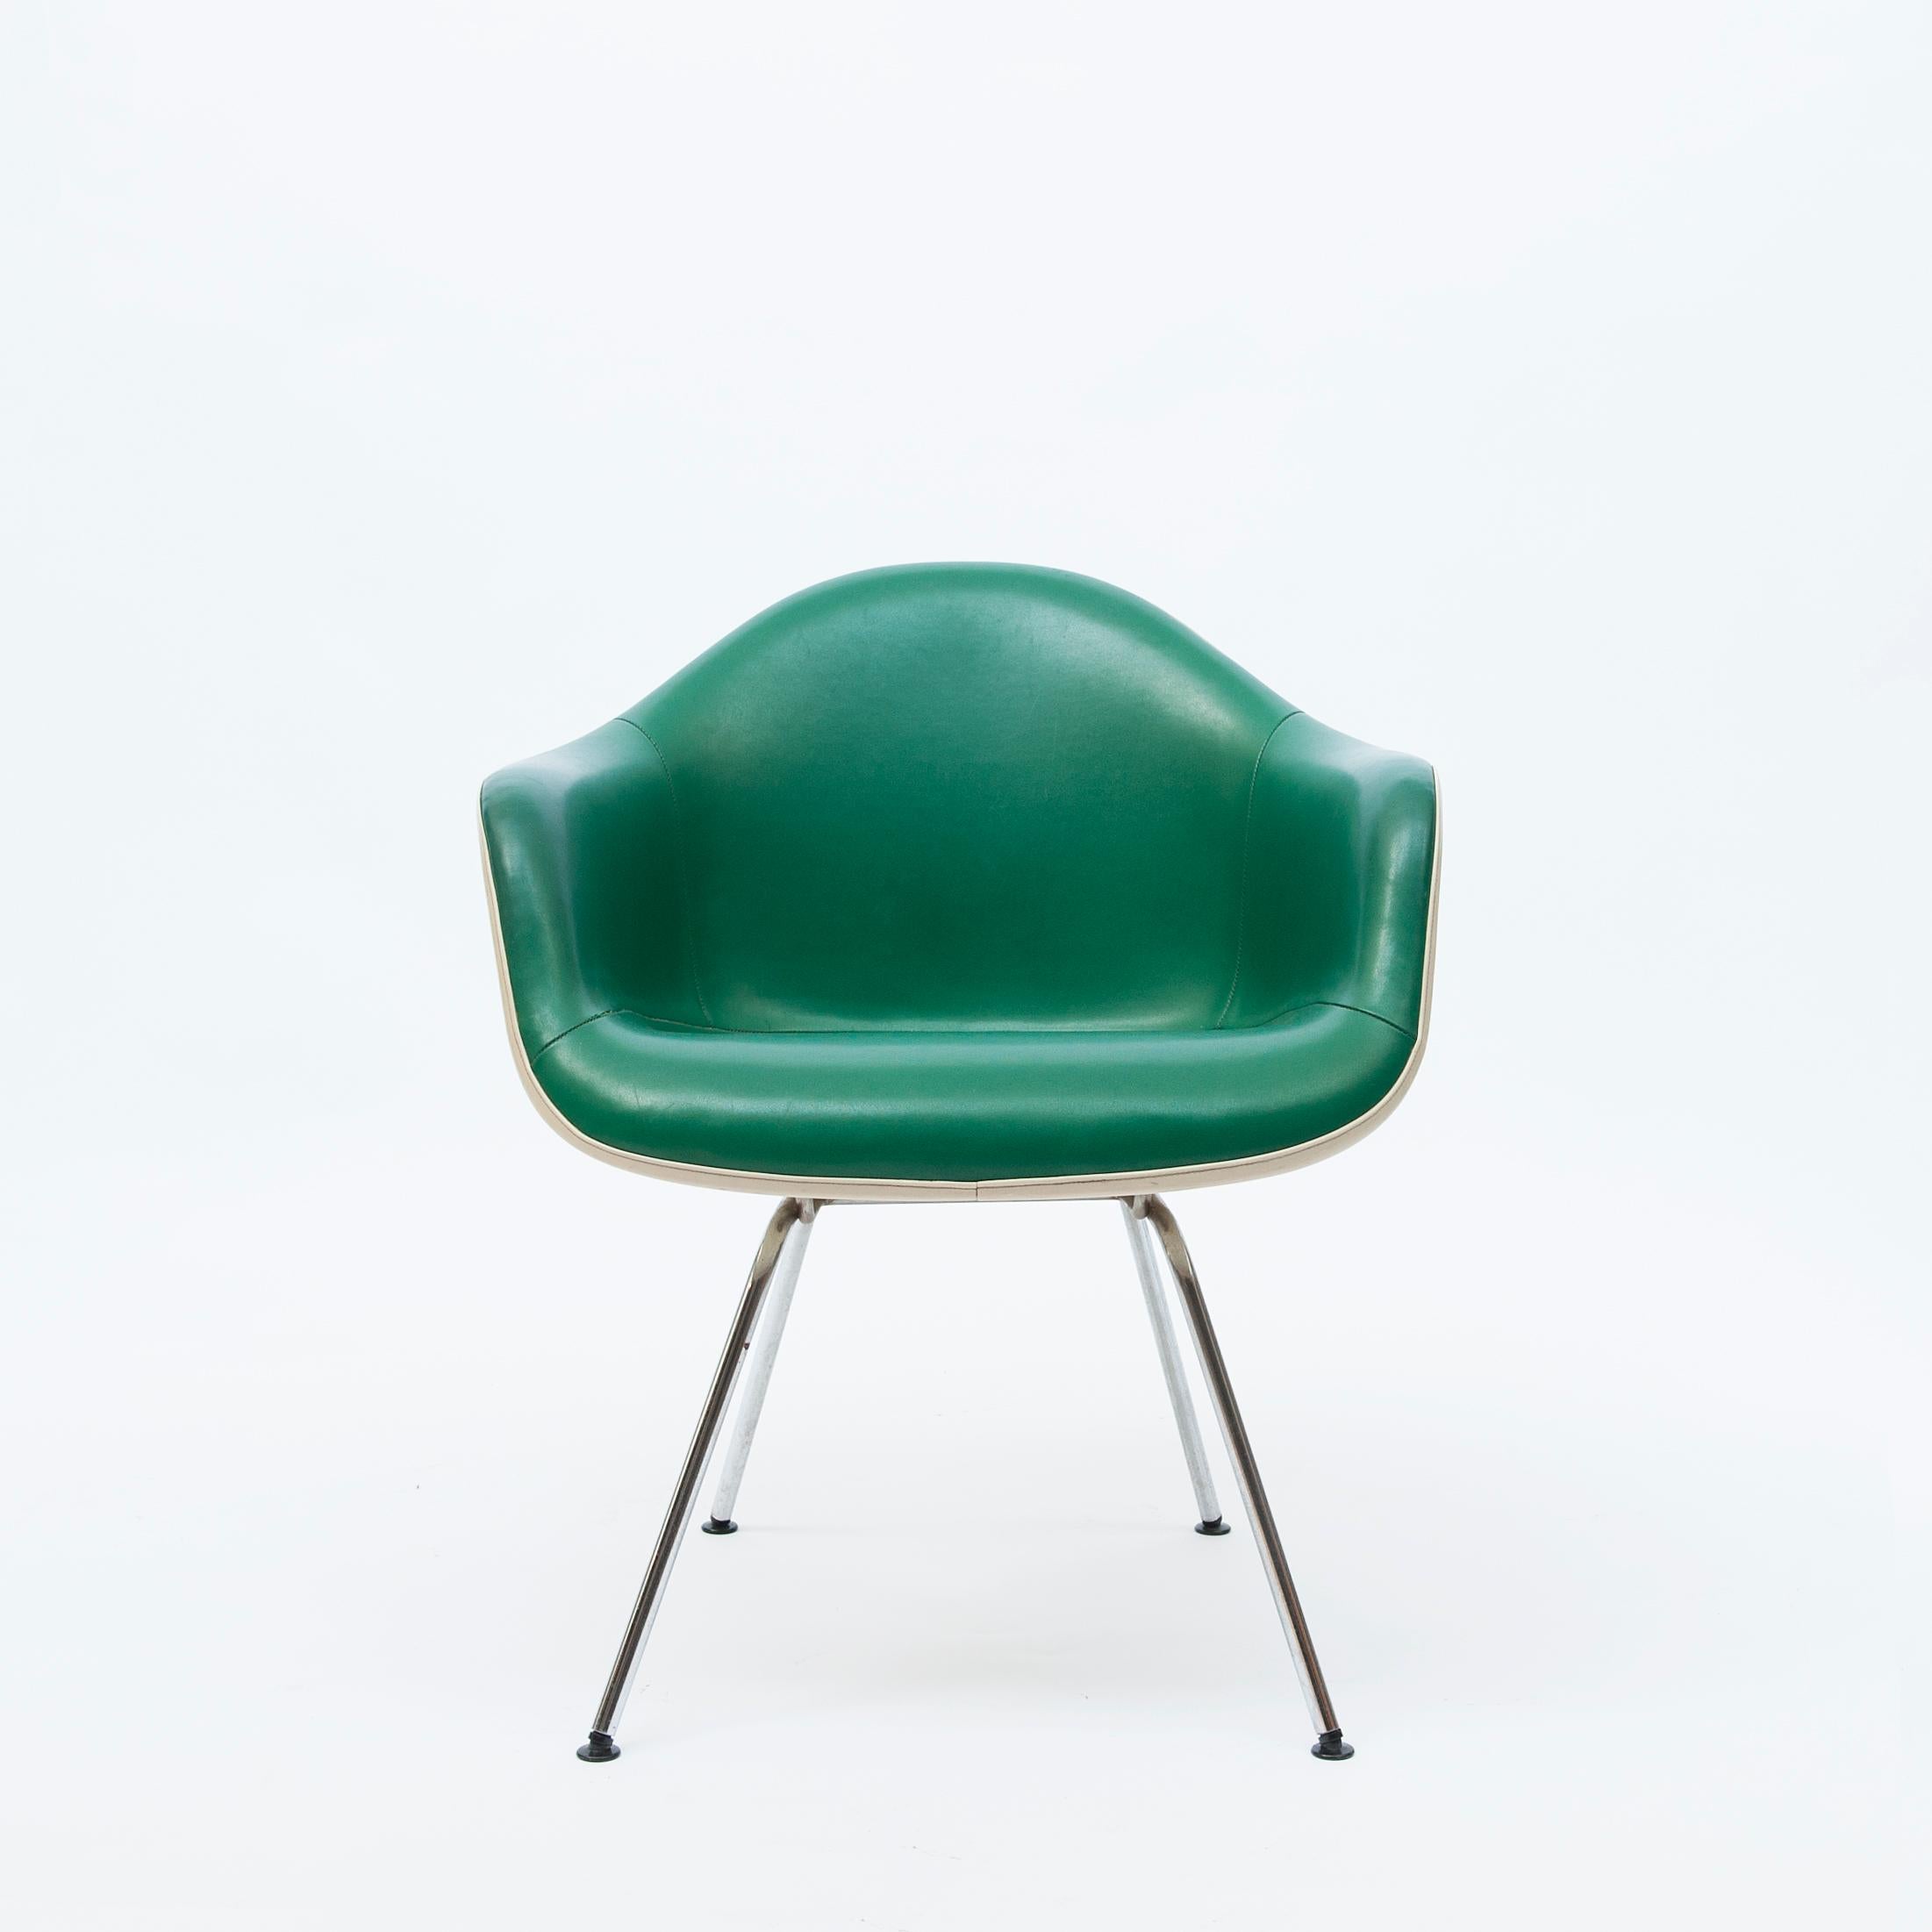 Ein Dax-Seilkantenstuhl aus Fiberglas mit Zenith-Schale, entworfen von Charles & Ray Eames für Herman Miller Co., mit aluminiumbeschichteten Beinen, die den originalen grünen Lederbezug über einer Fiberglasschale beibehalten. 
Hergestellt von